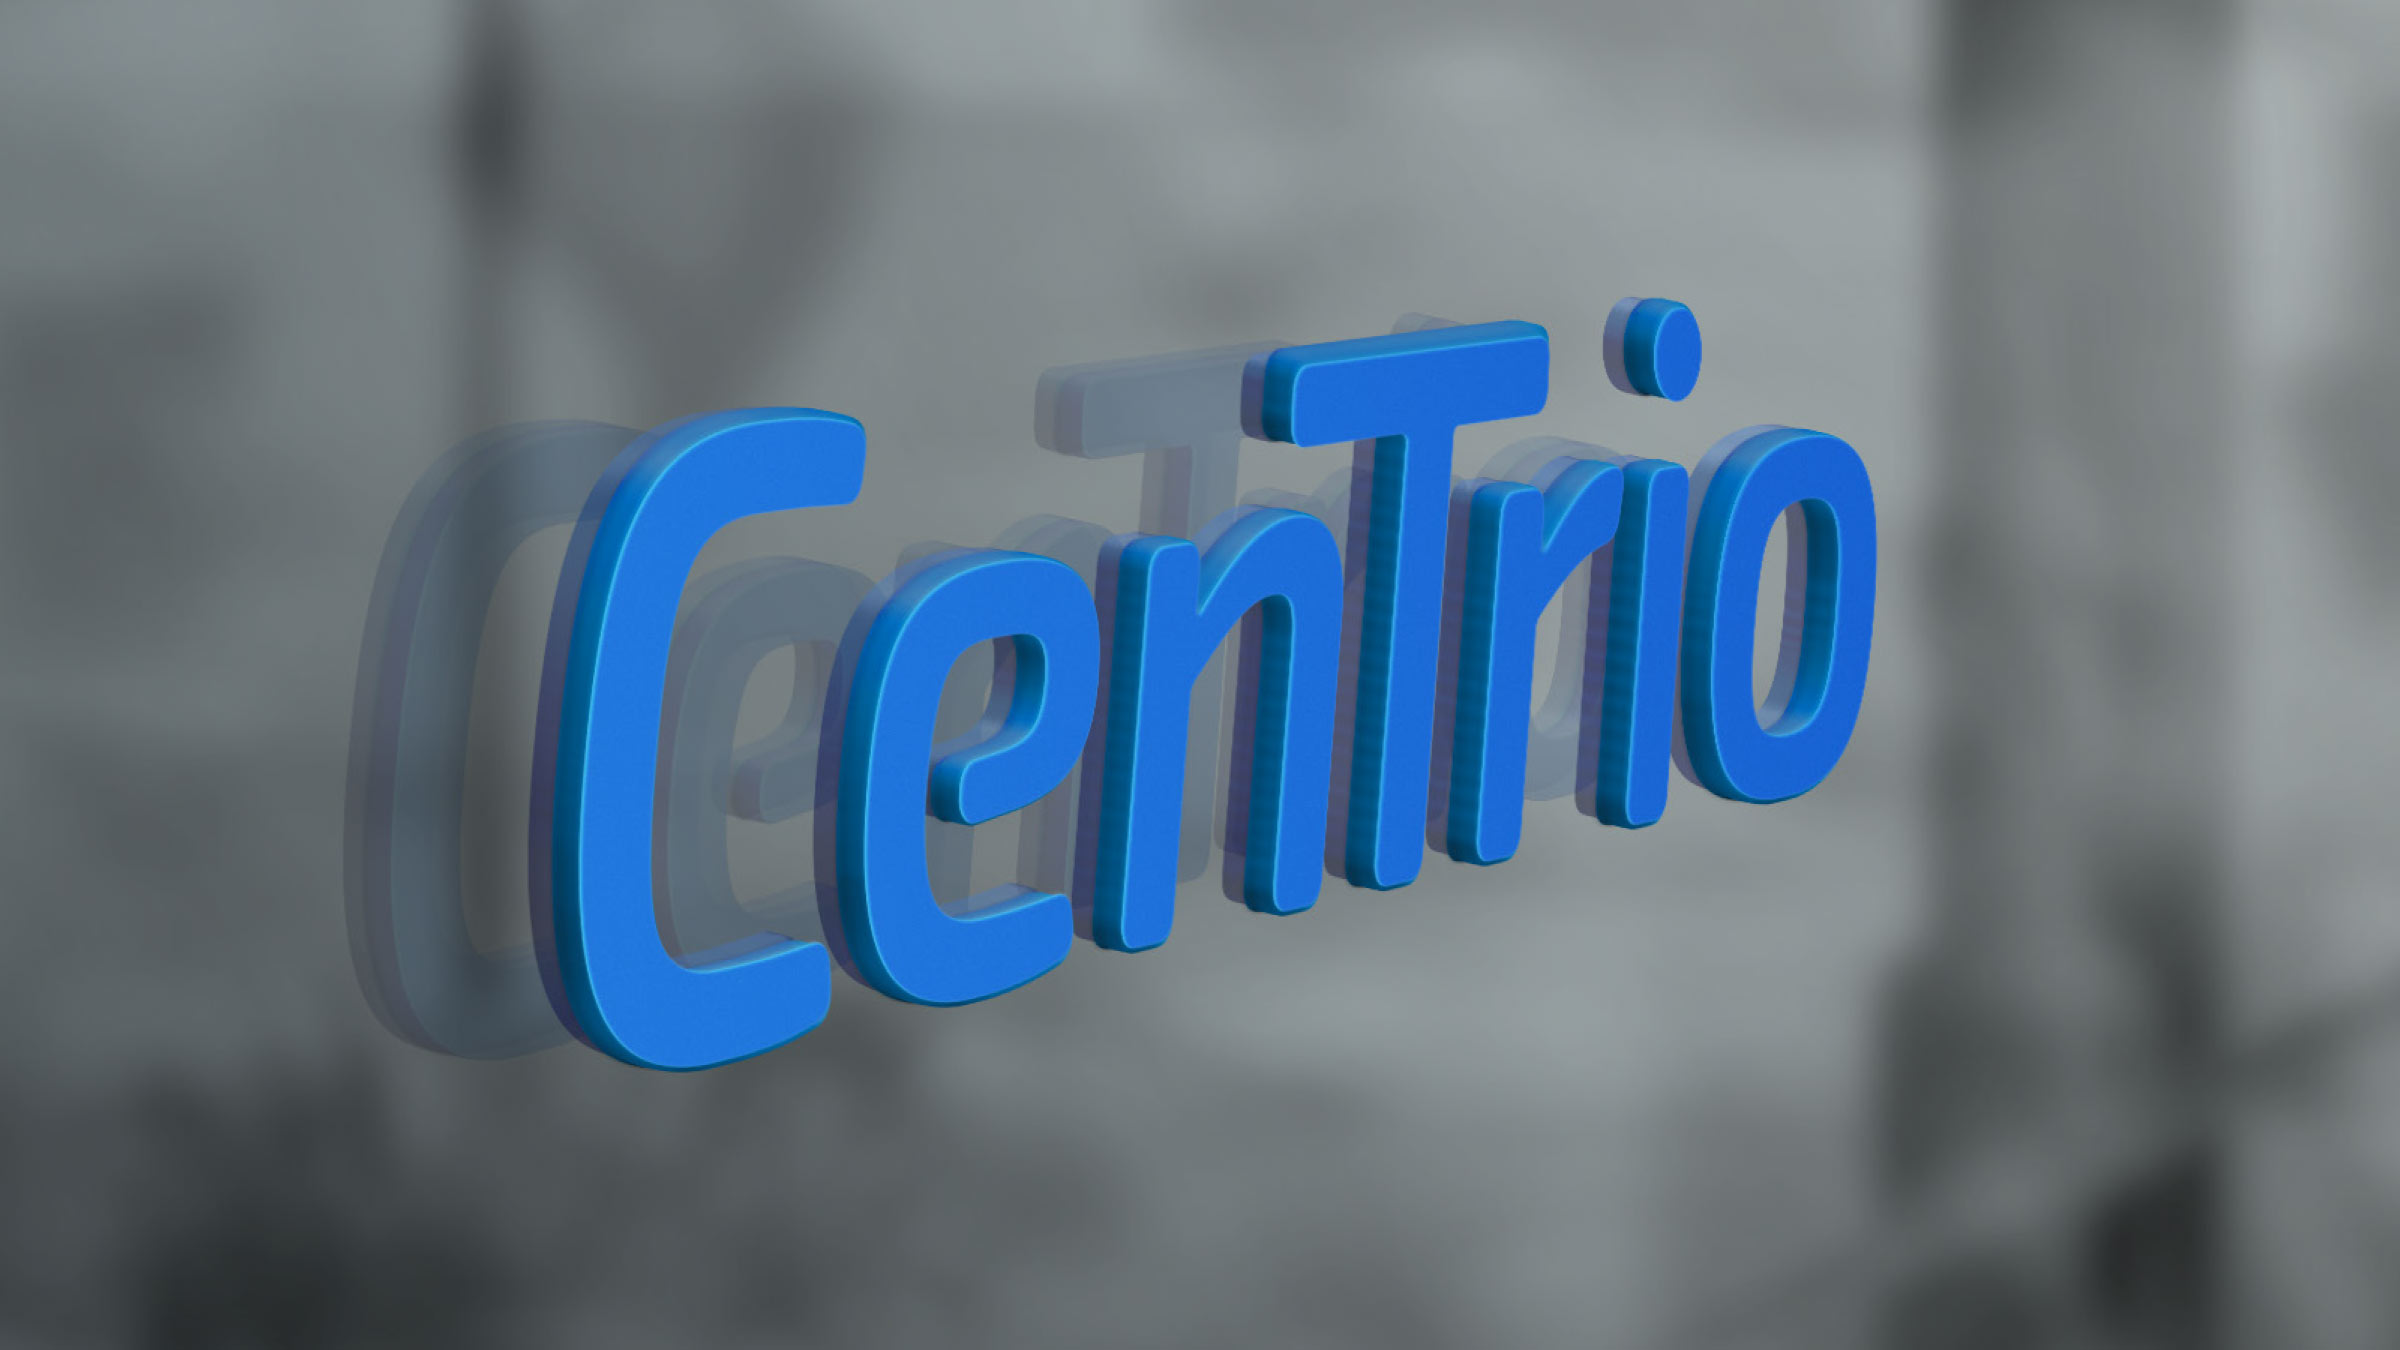 CenTrio brand logo